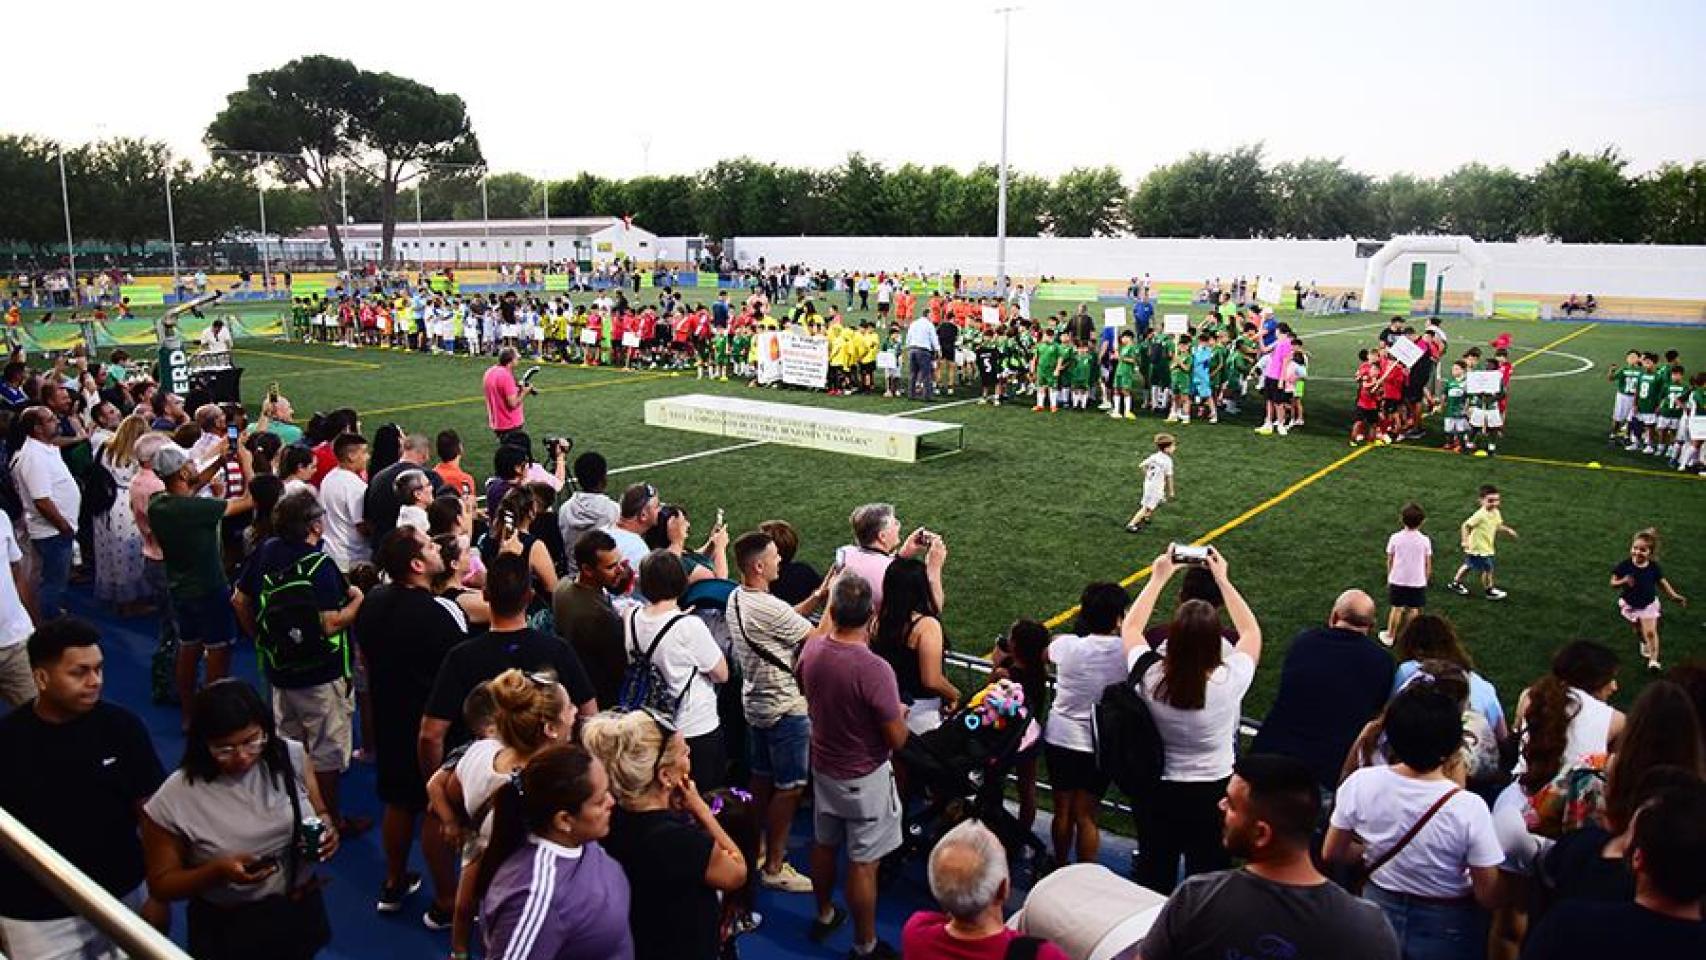 La EFB Odelot Toletum gana un Campeonato de Fútbol Benjamín 'La Sagra' de récord con más 800 participantes